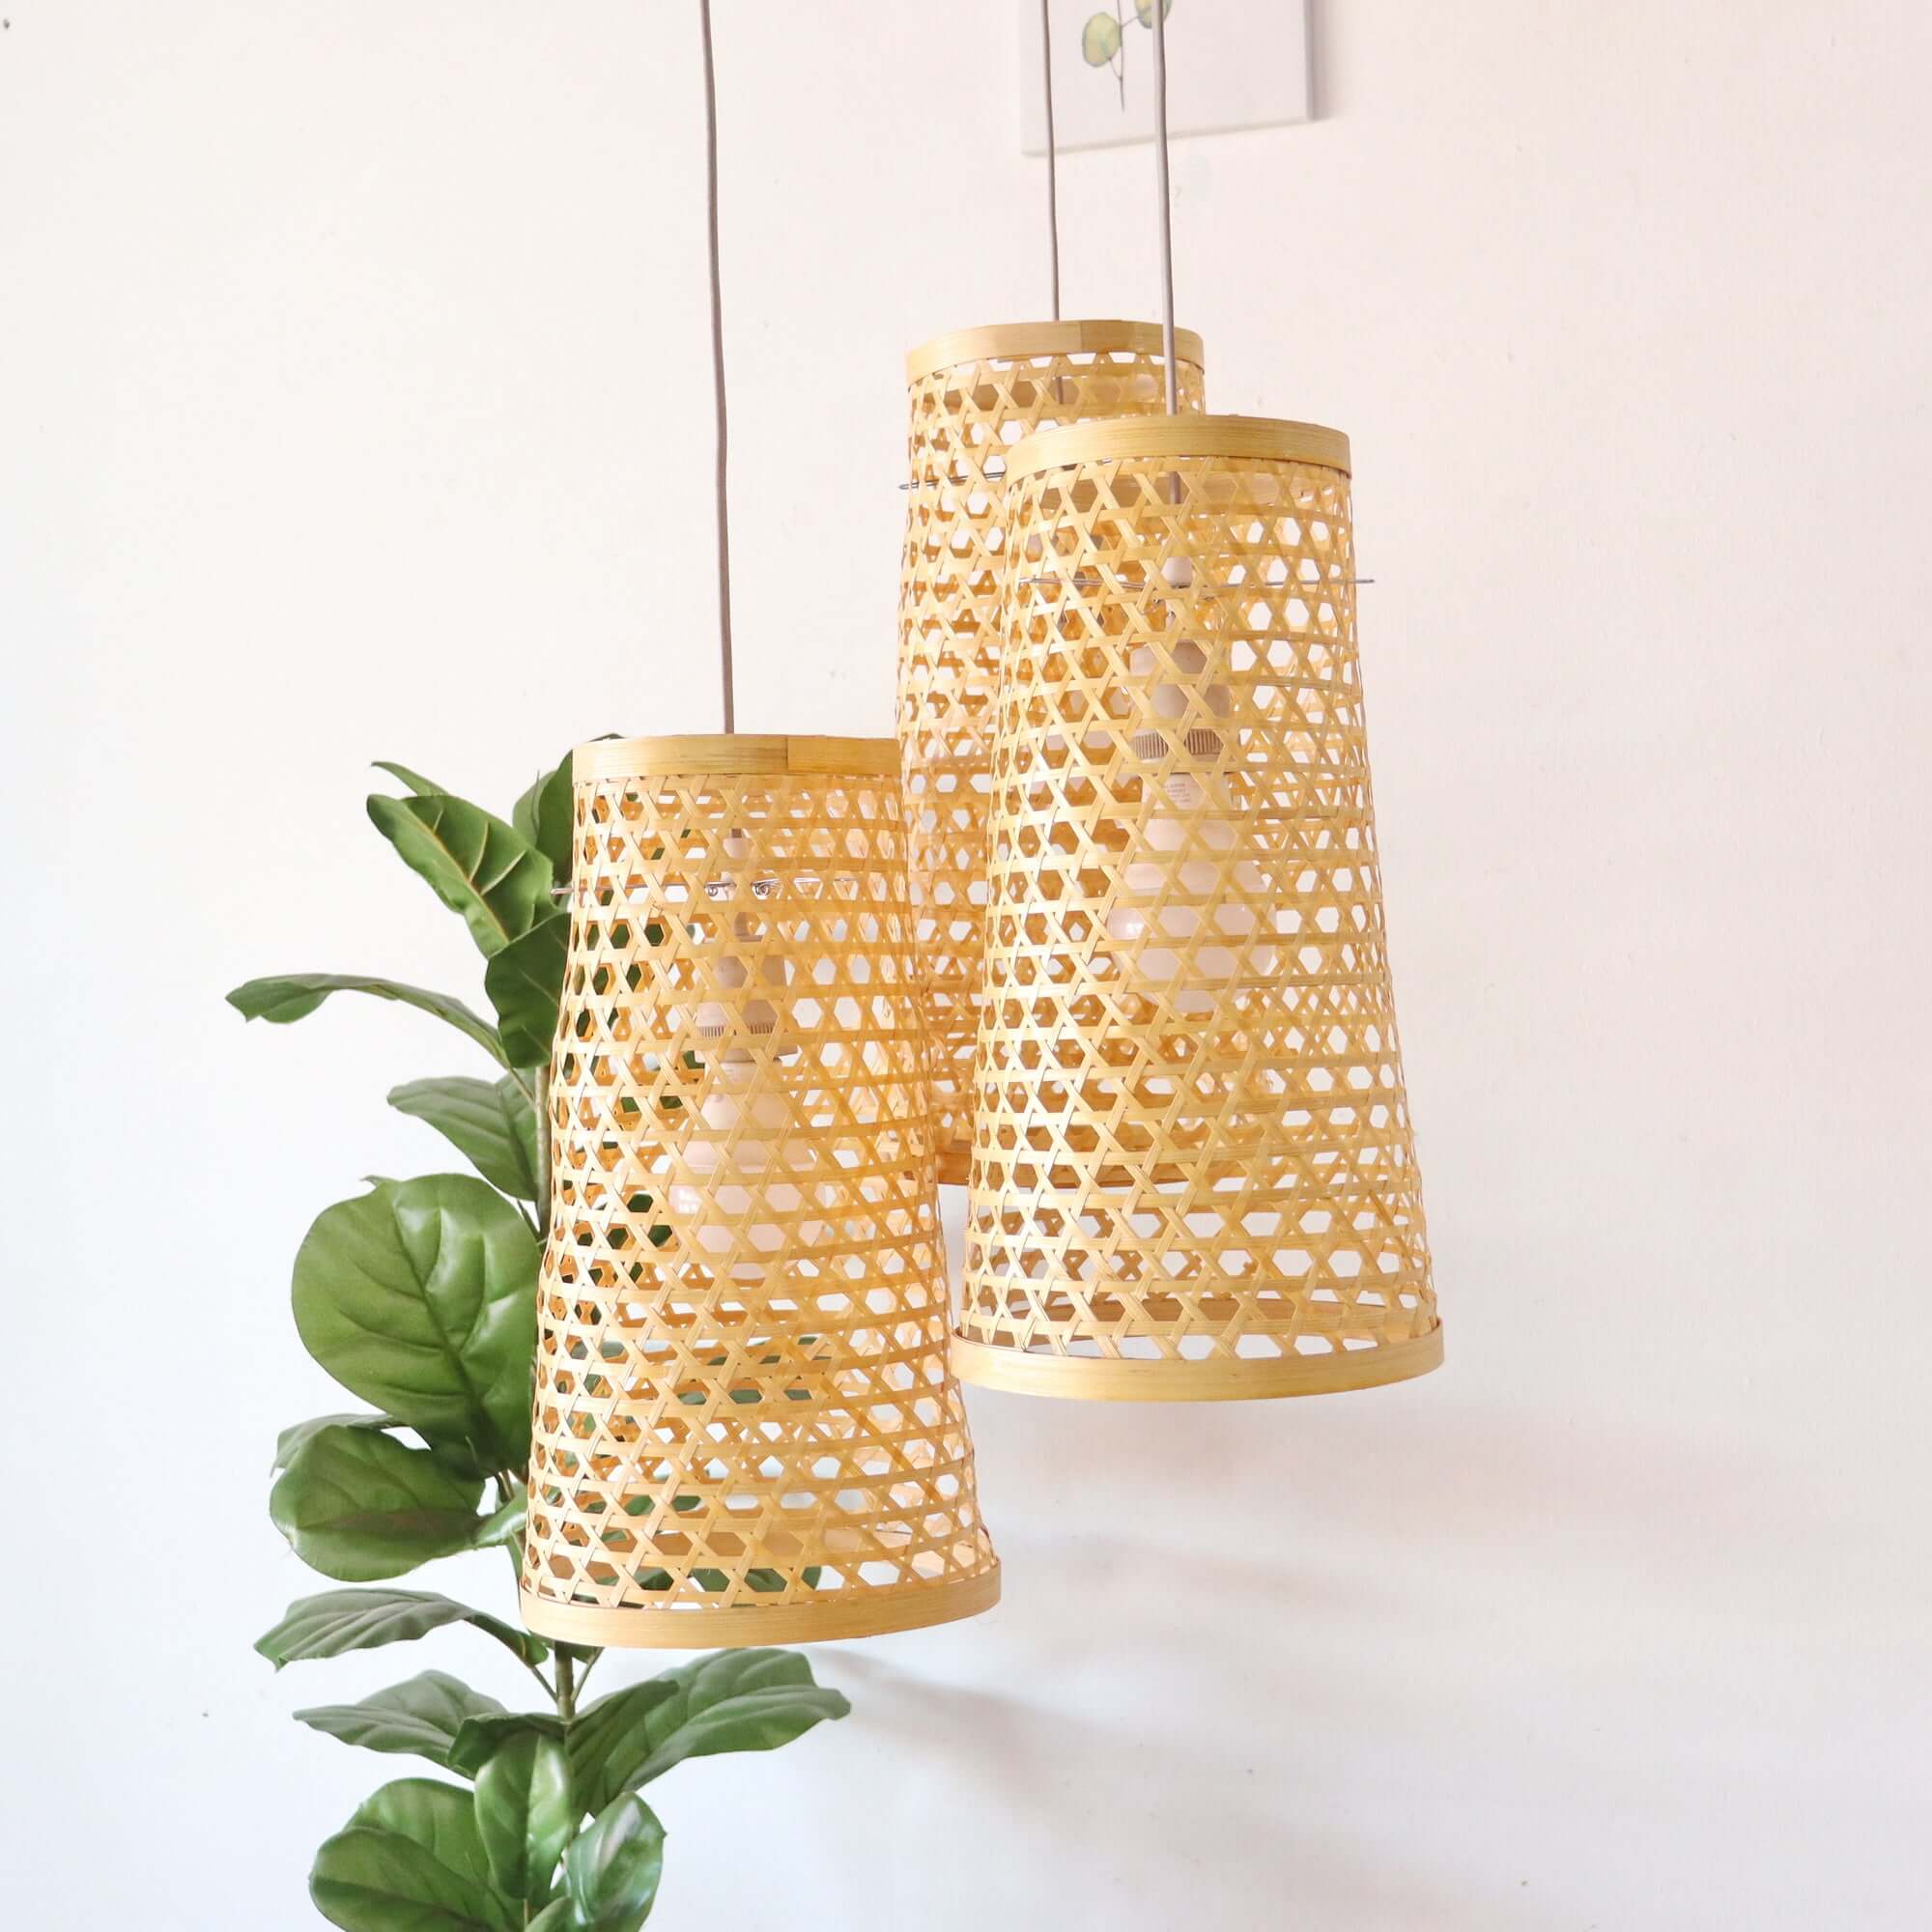 MA THU SON - Bamboo Pendant Light Shade